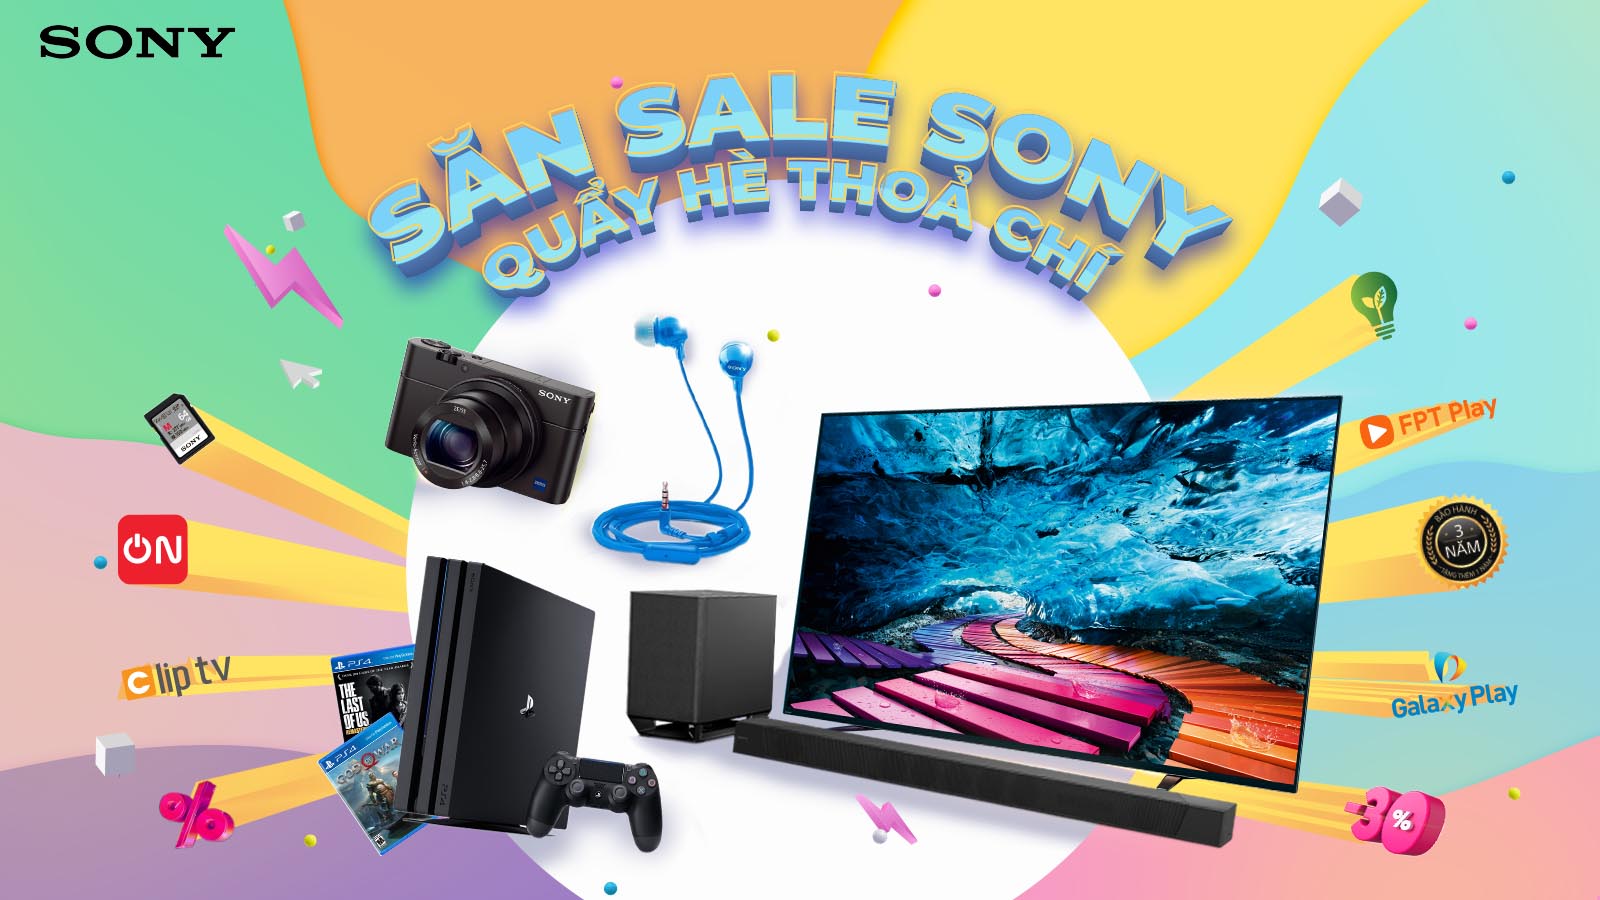 “Săn sale Sony – Quẩy hè thỏa chí” Hè cực vui cùng khuyến mãi cực chất từ Sony